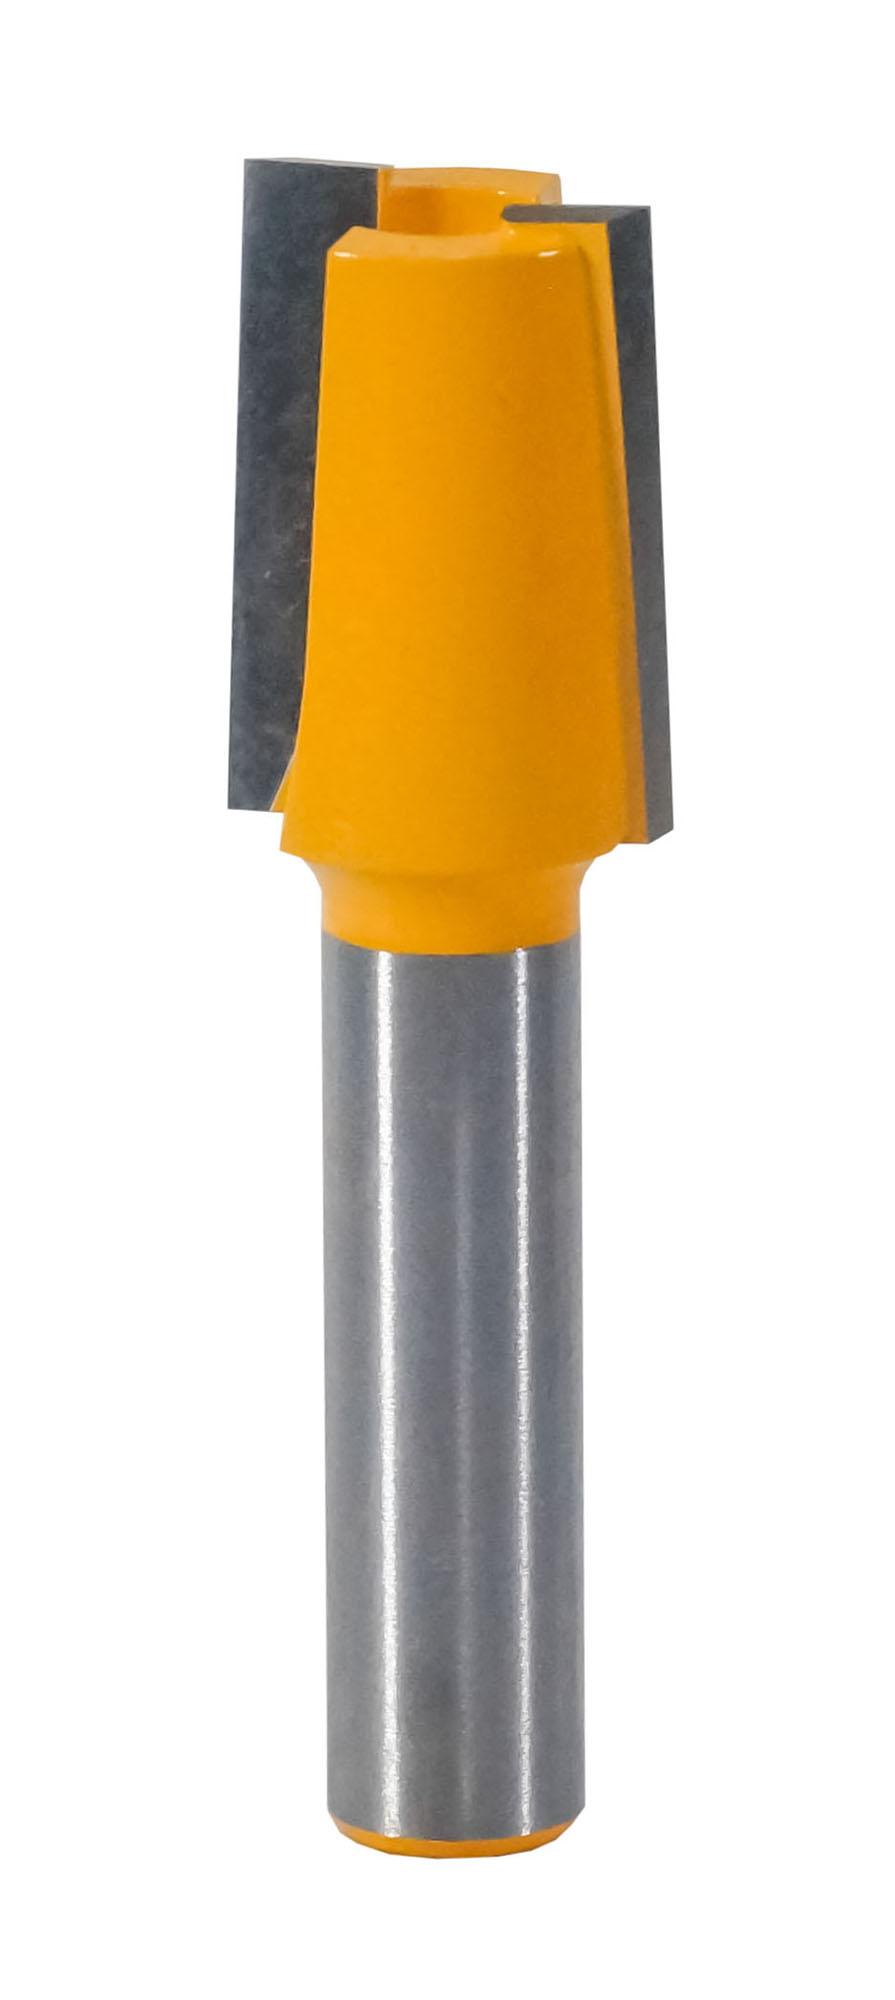 Фреза пазовая прямая под накладные петли Энкор ф14х20,хв 8 мм 9217 функциональные петли для растяжки